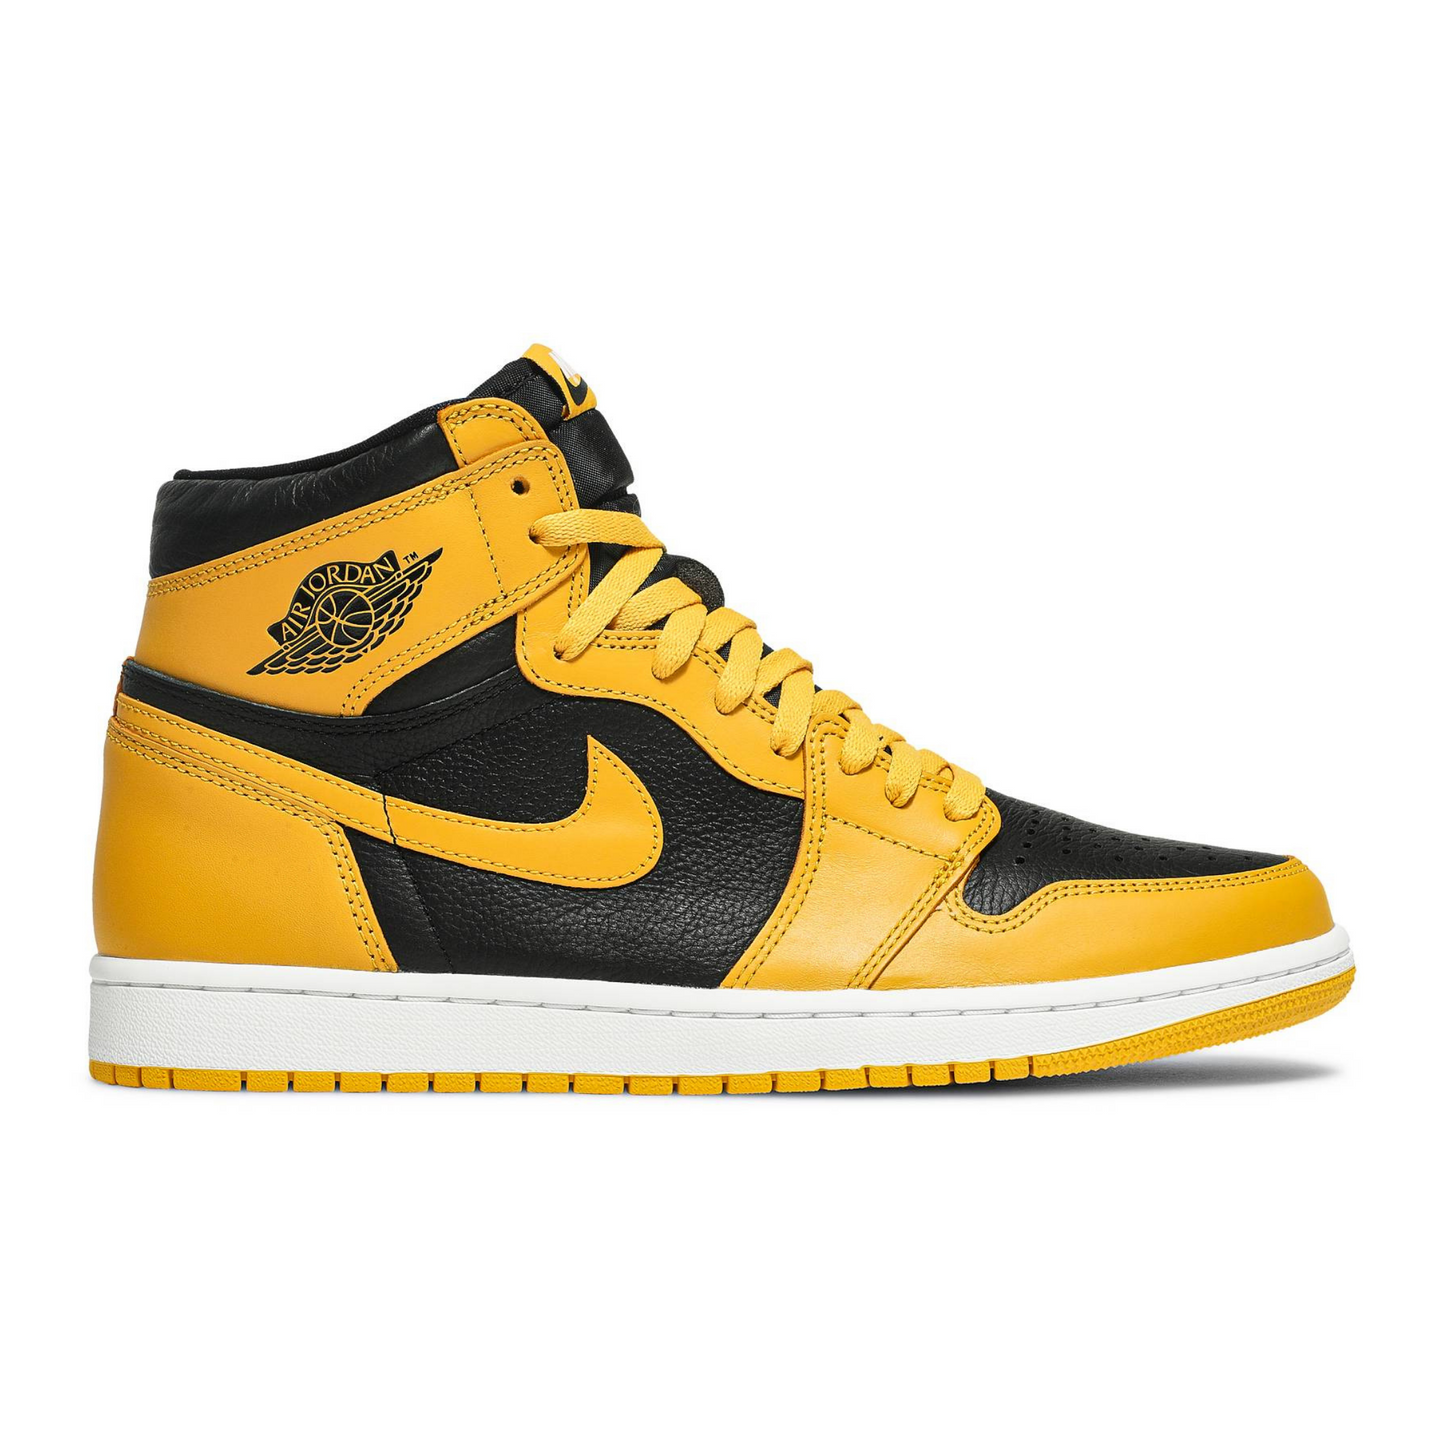 Air Jordan 1 High Pollen Yellow Black Sneakers